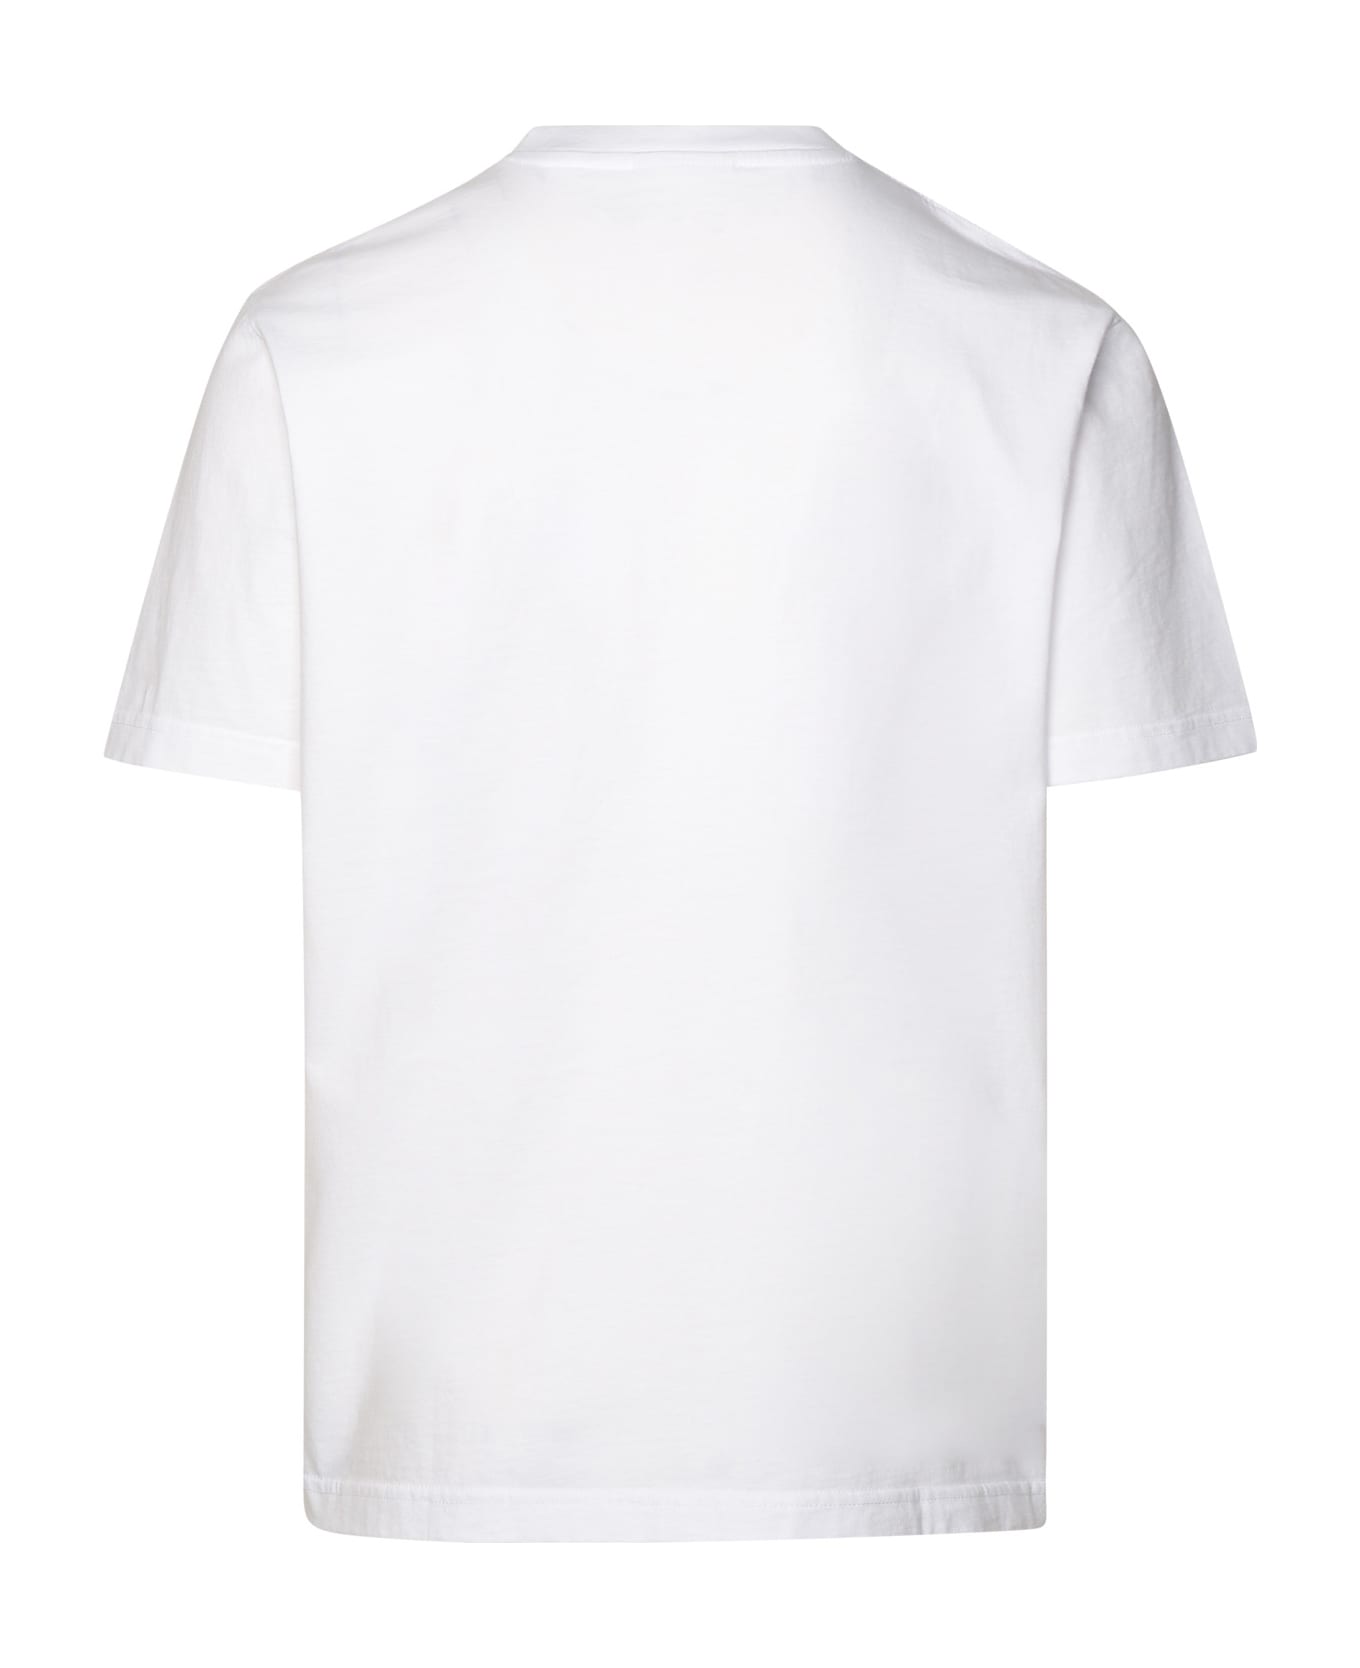 Maison Kitsuné White Cotton T-shirt - White シャツ